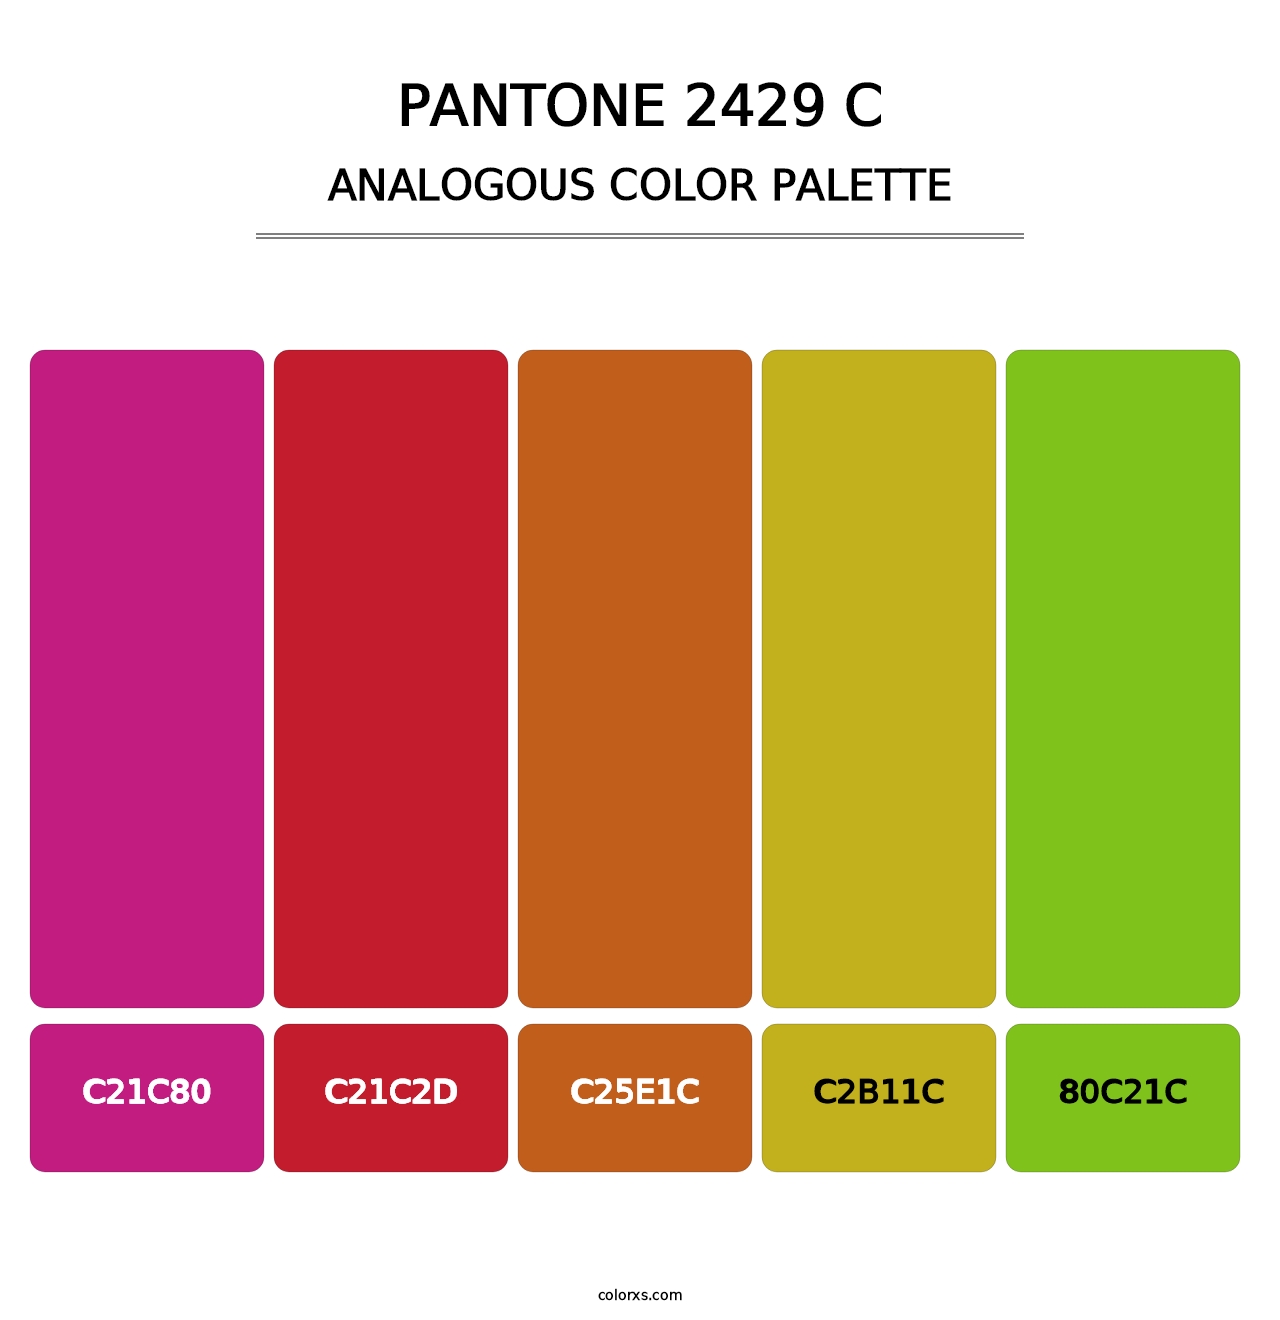 PANTONE 2429 C - Analogous Color Palette